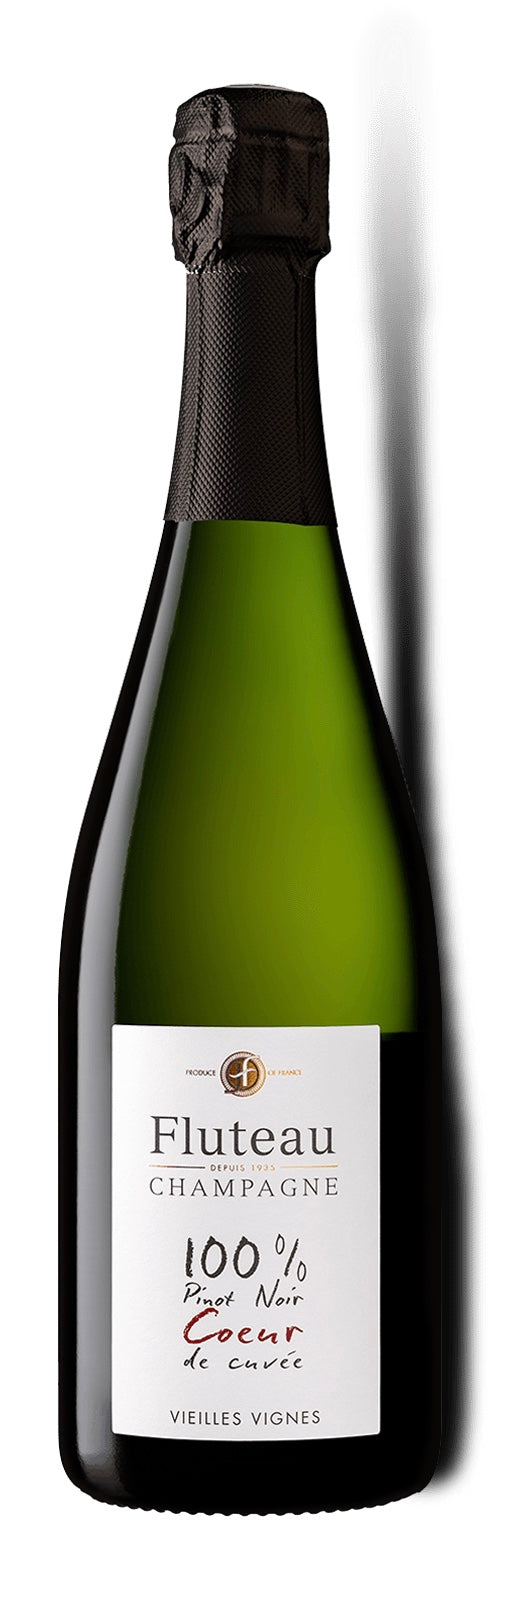 Jéroboam - 3 L - Champagne Fluteau - Coeur de cuvée - Extra Brut - Vieilles Vignes - Caisse Bois